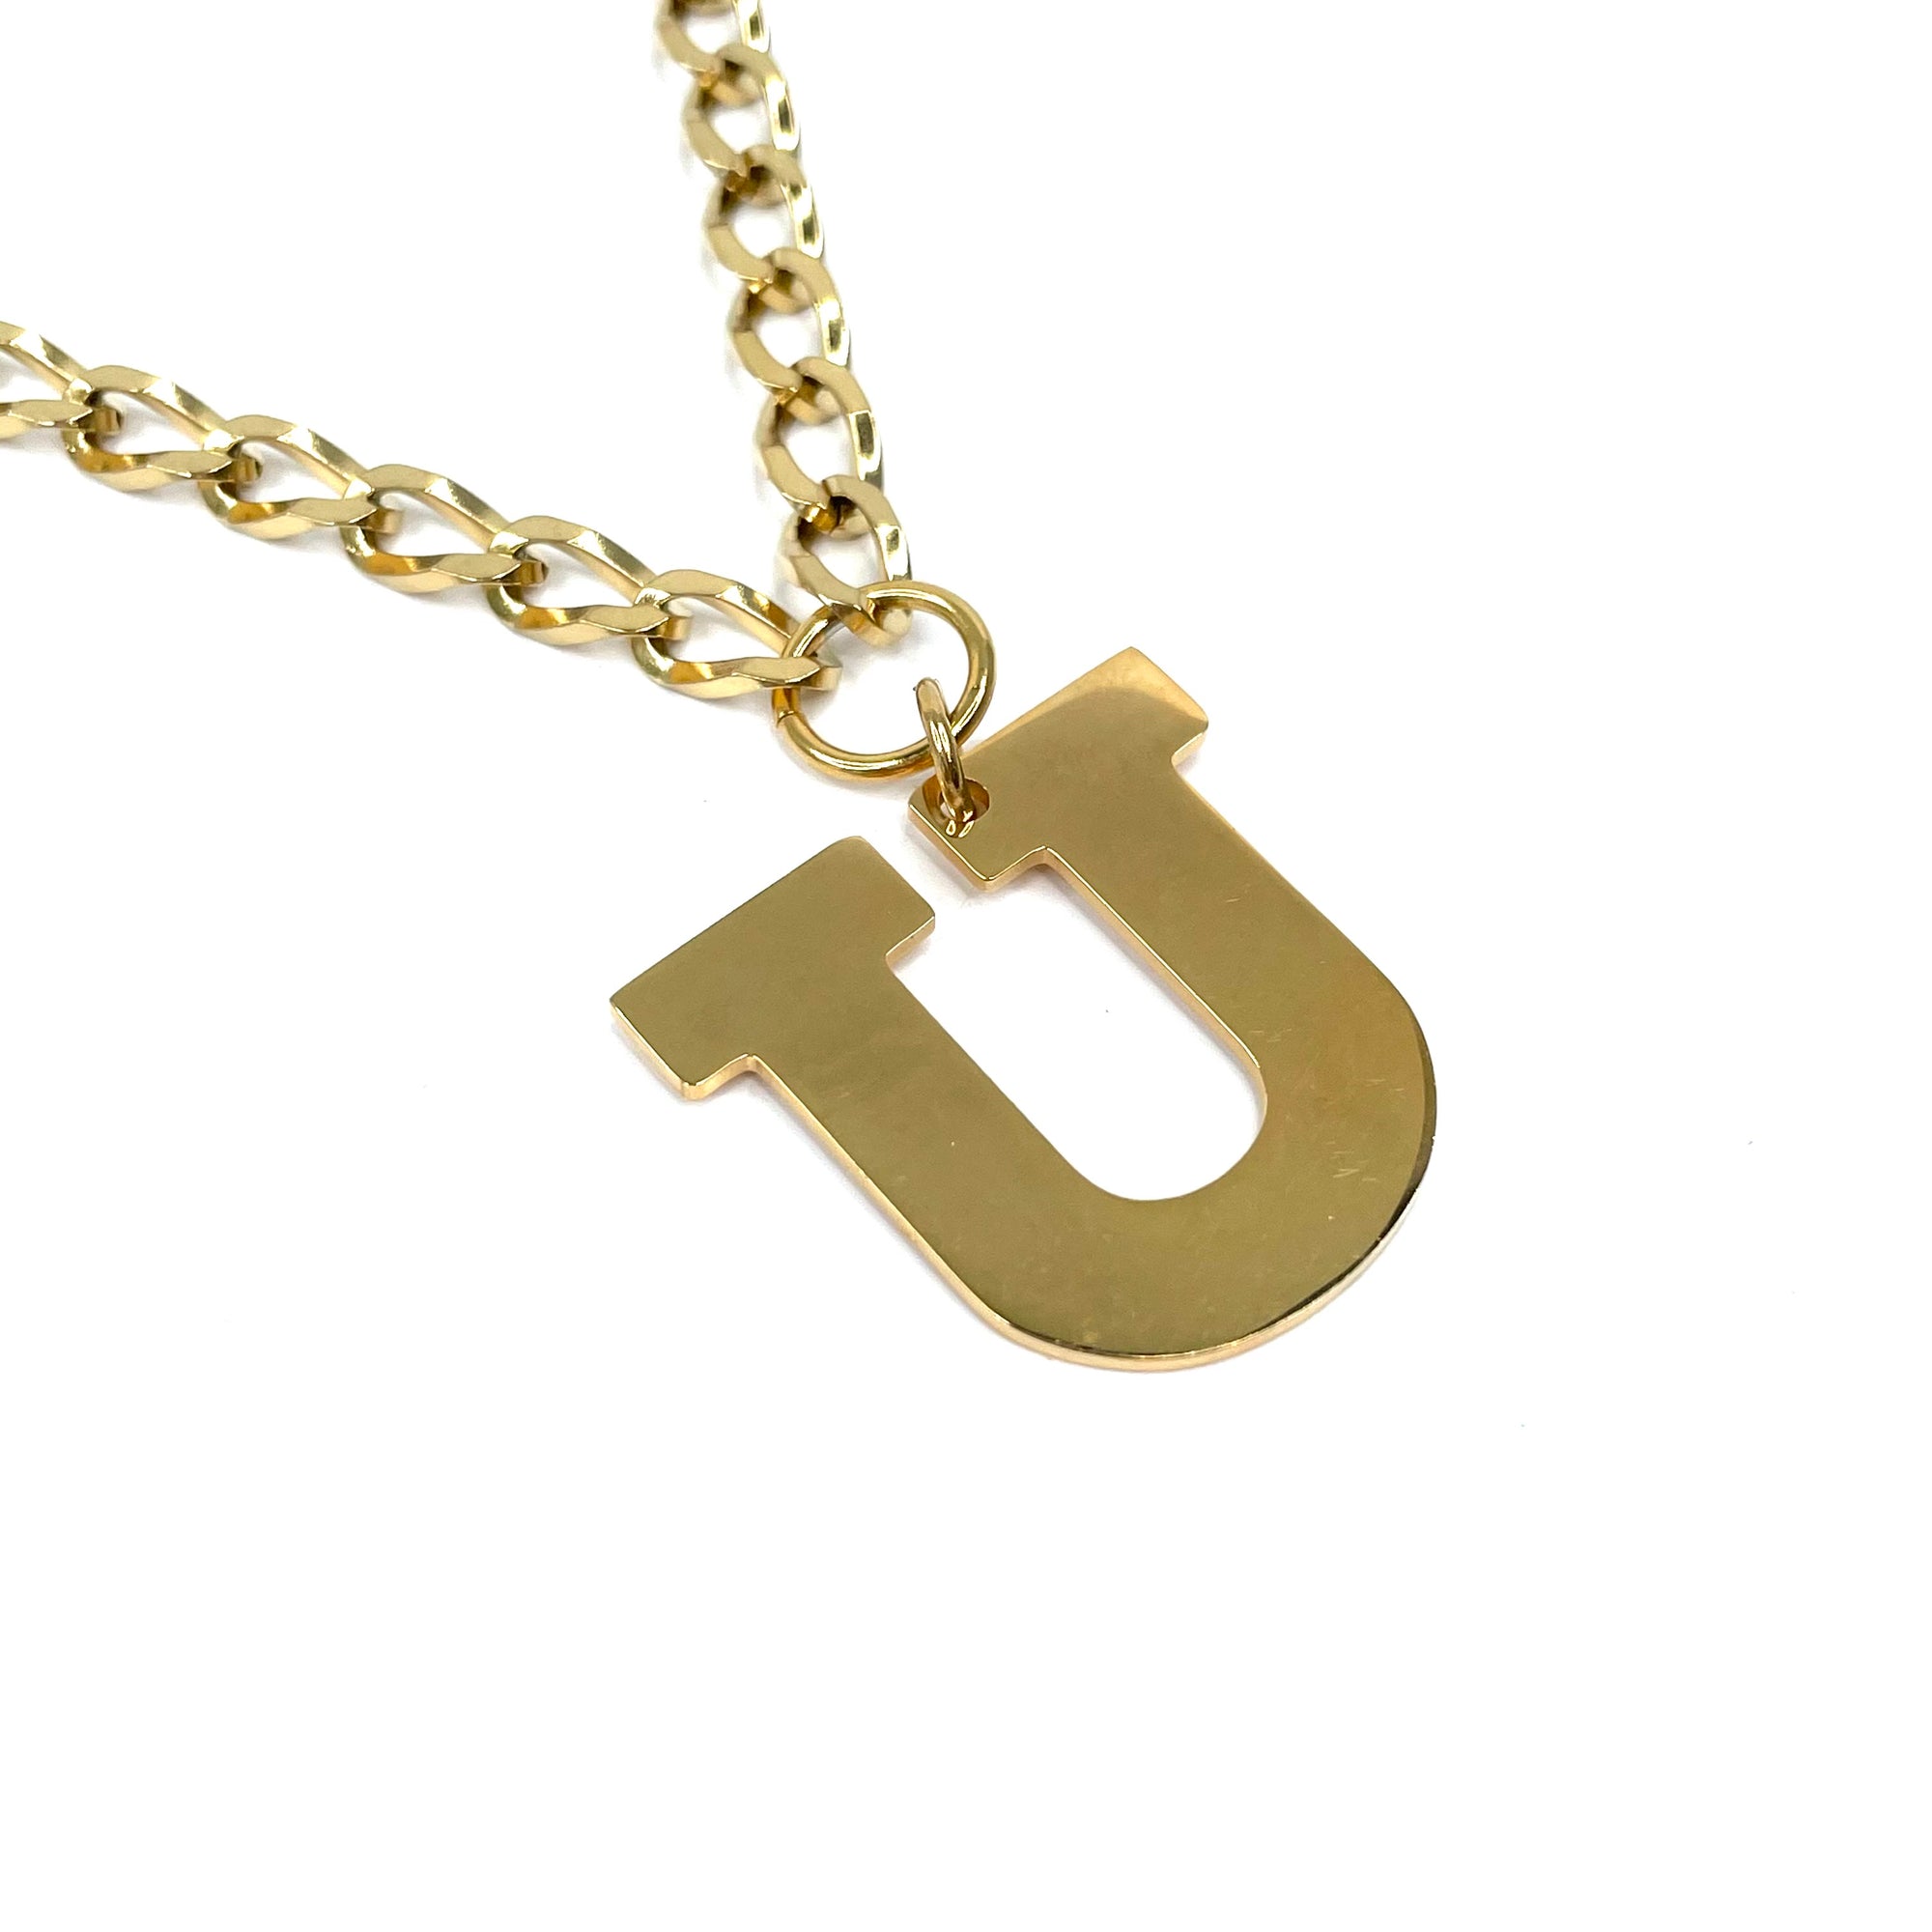 Lettering Legend Necklace Necklaces Cerese D, Inc. Gold U 